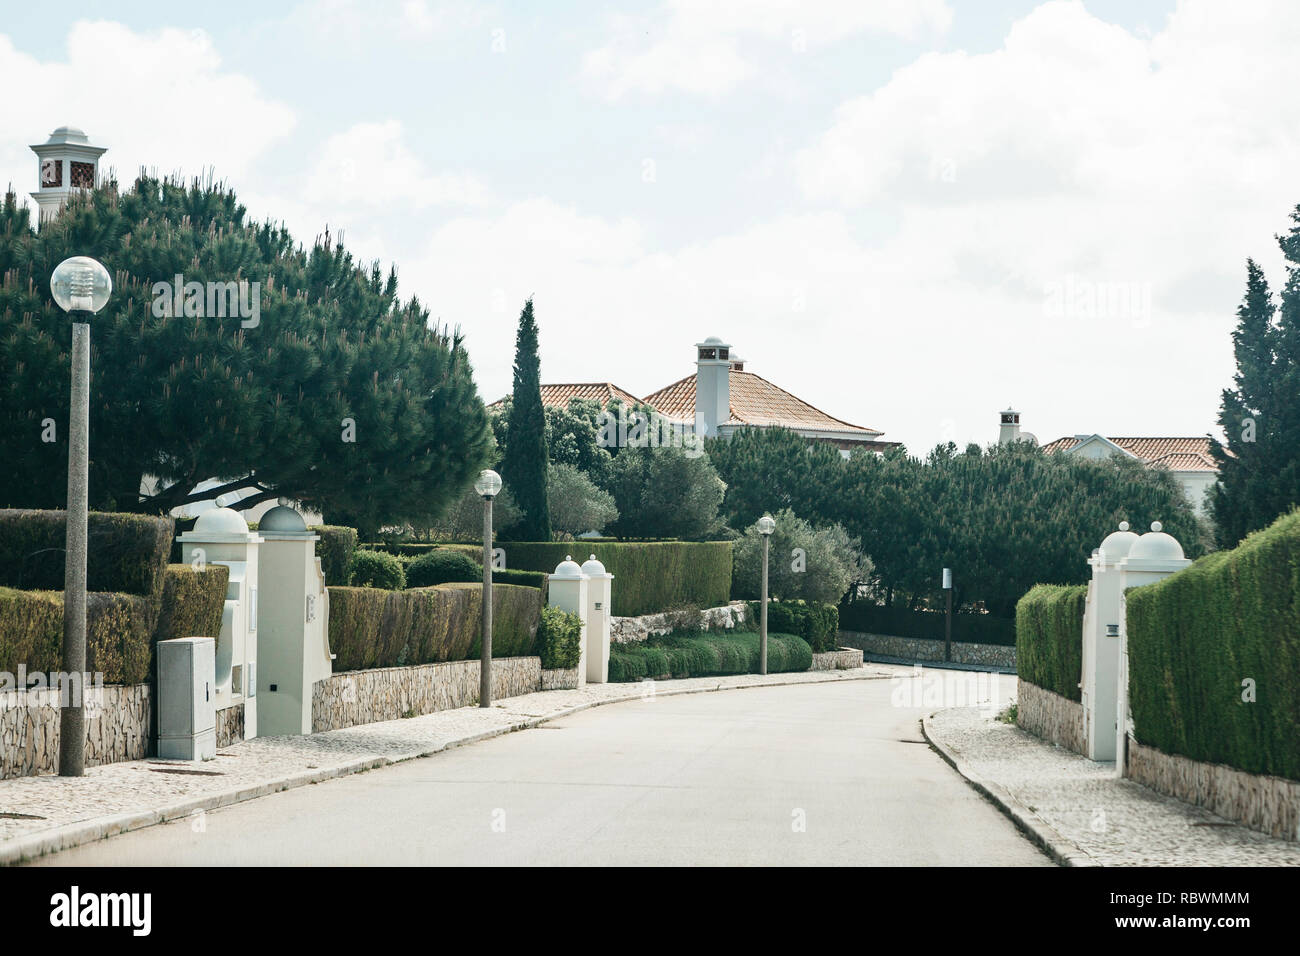 Blick auf eine asphaltierte Straße entlang einer traditionellen Straße voller Pflanzen und Häuser im südlichen Portugal. Wohngebiet in den Vorstädten. Stockfoto